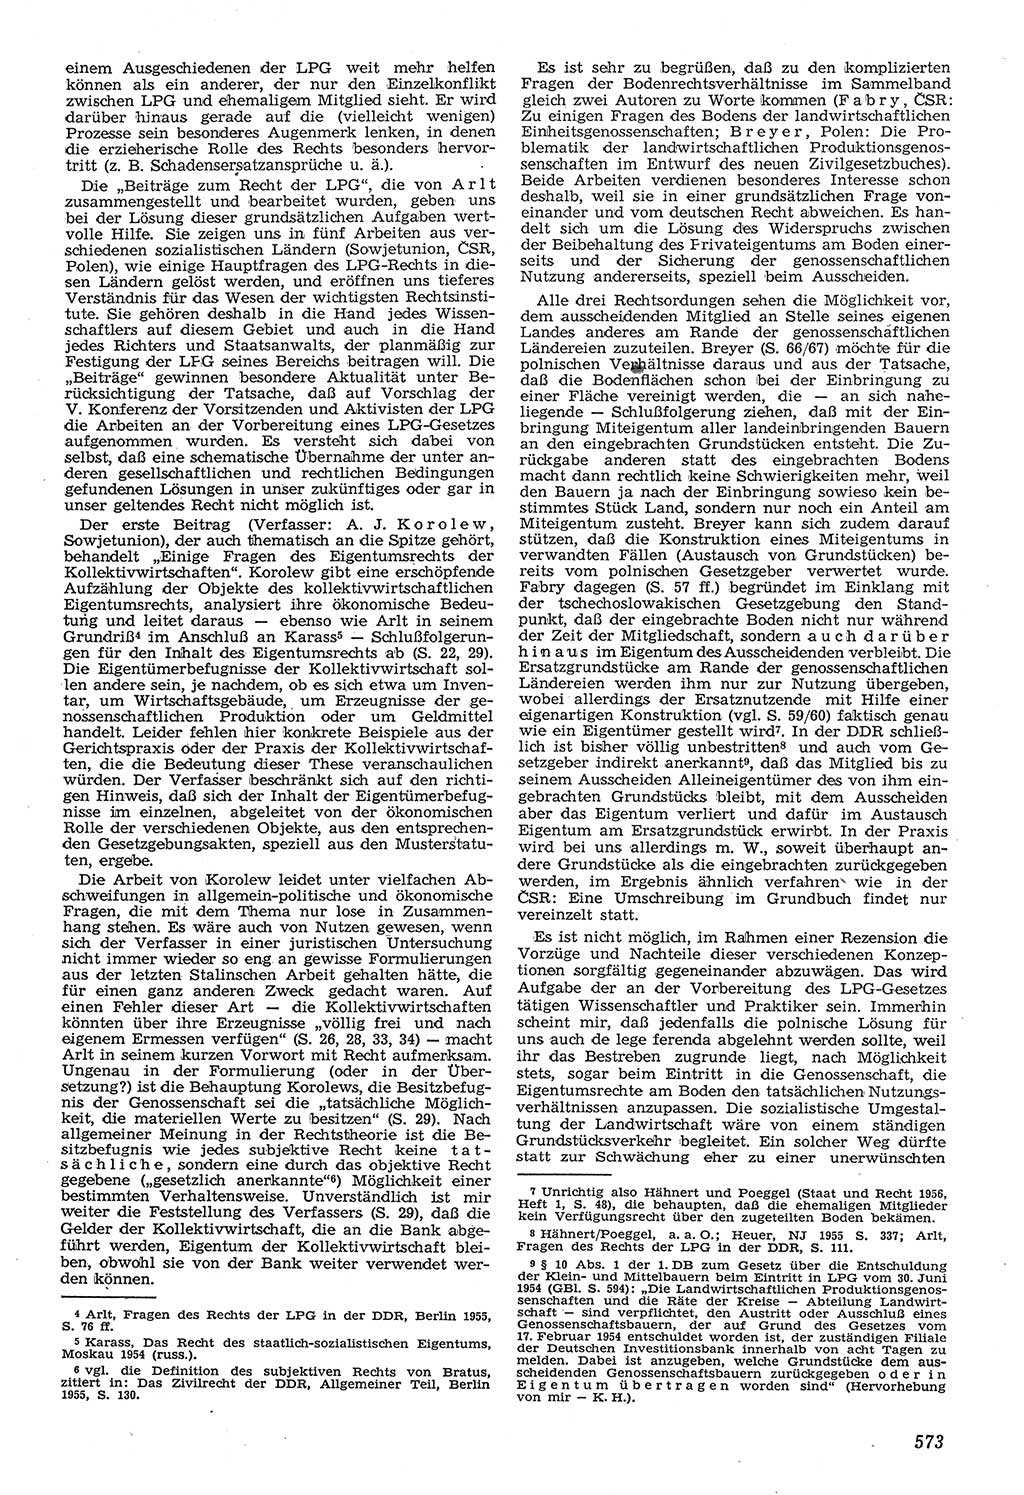 Neue Justiz (NJ), Zeitschrift für Recht und Rechtswissenschaft [Deutsche Demokratische Republik (DDR)], 11. Jahrgang 1957, Seite 573 (NJ DDR 1957, S. 573)